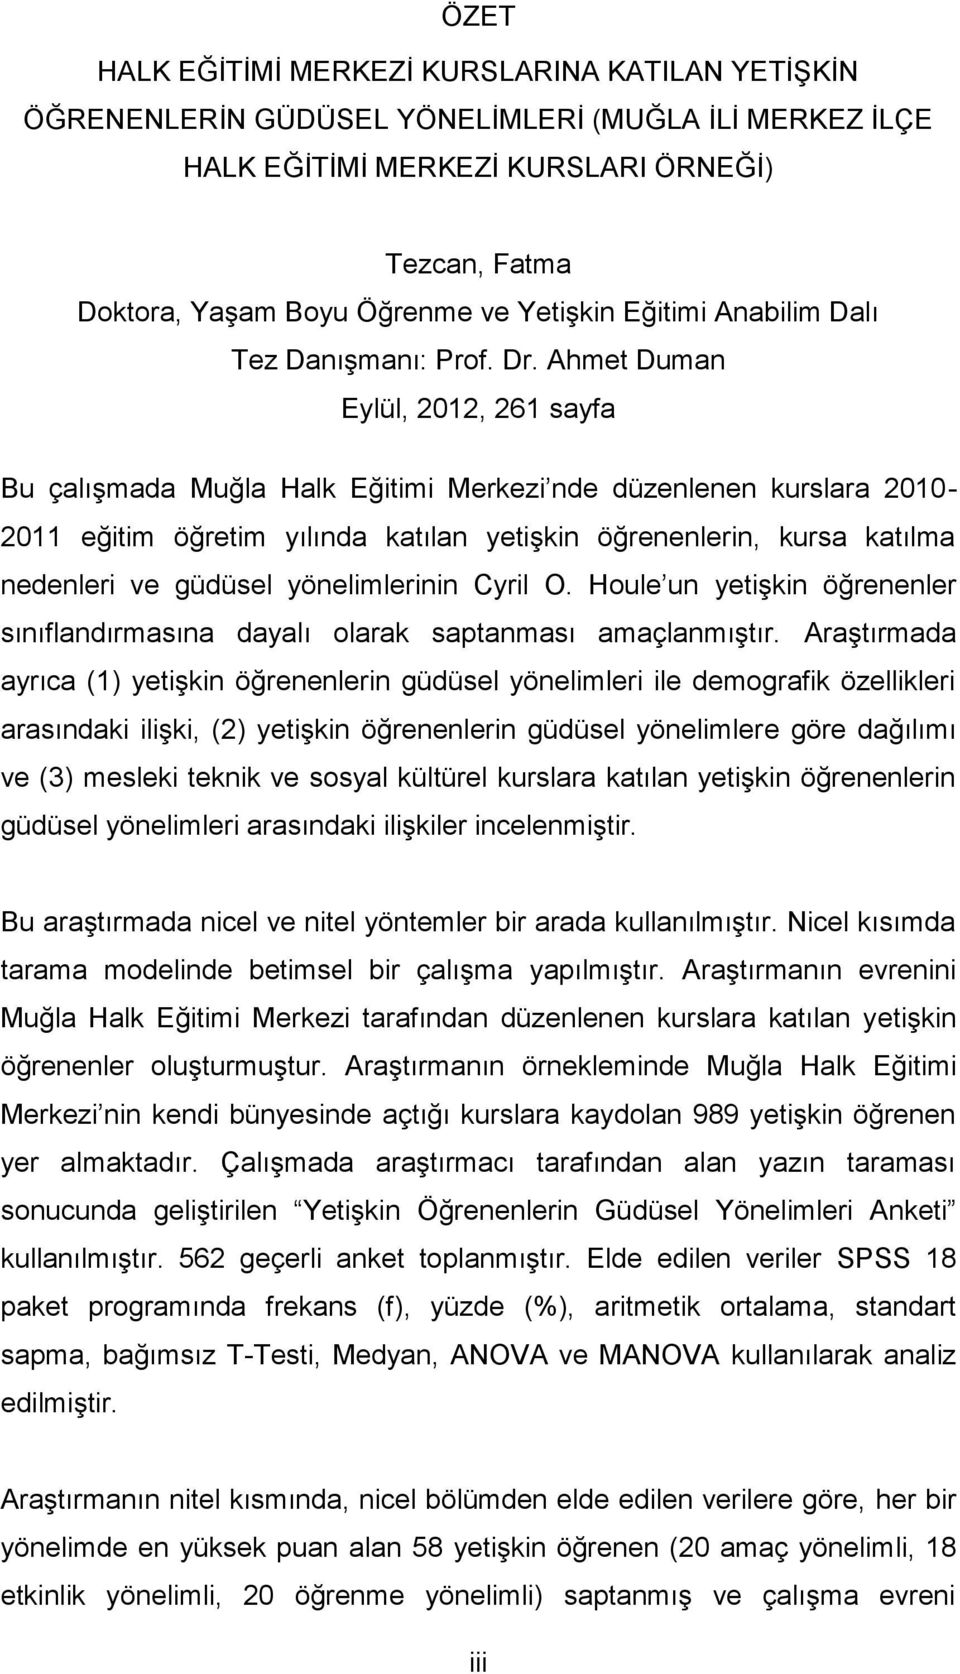 Ahmet Duman Eylül, 2012, 261 sayfa Bu çalışmada Muğla Halk Eğitimi Merkezi nde düzenlenen kurslara 2010-2011 eğitim öğretim yılında katılan yetişkin öğrenenlerin, kursa katılma nedenleri ve güdüsel